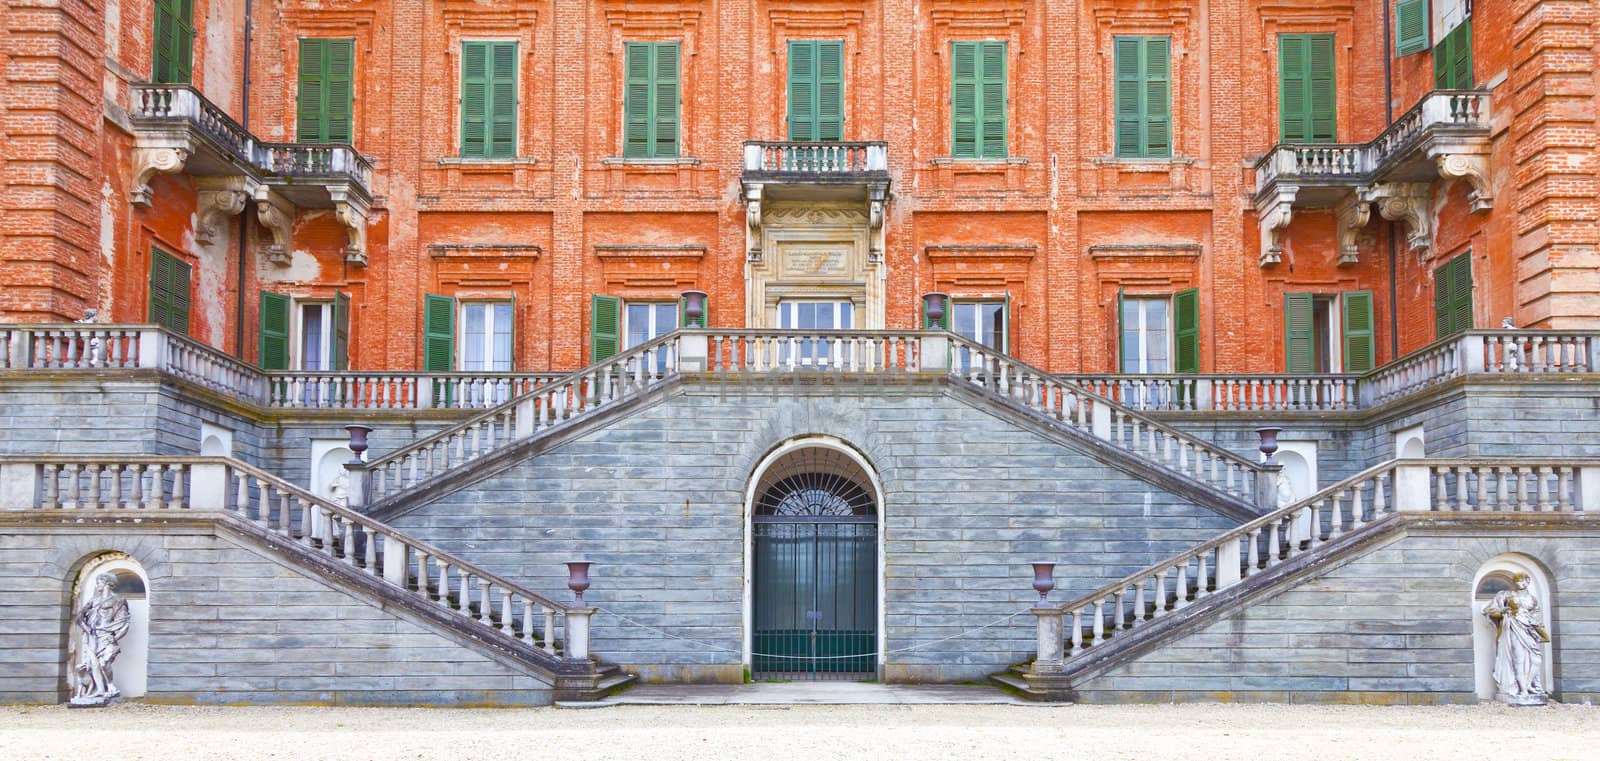 Italy - Piemonte region. Racconigi Royal Castle entrance